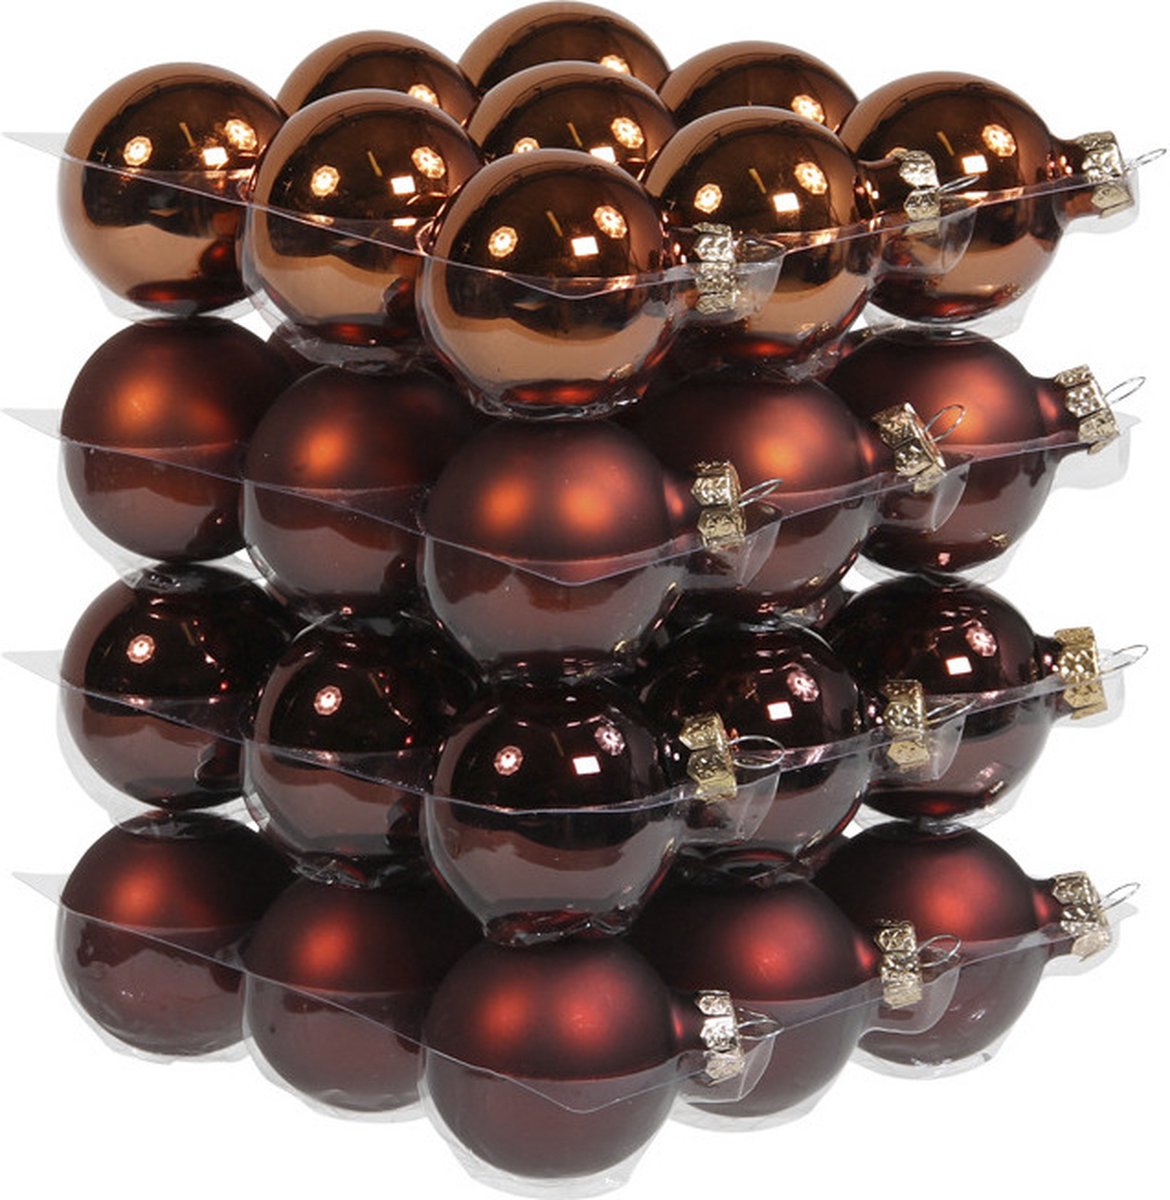 72x stuks kerstversiering kerstballen mahonie bruin van glas - 4 cm - mat/glans - Kerstboomversiering